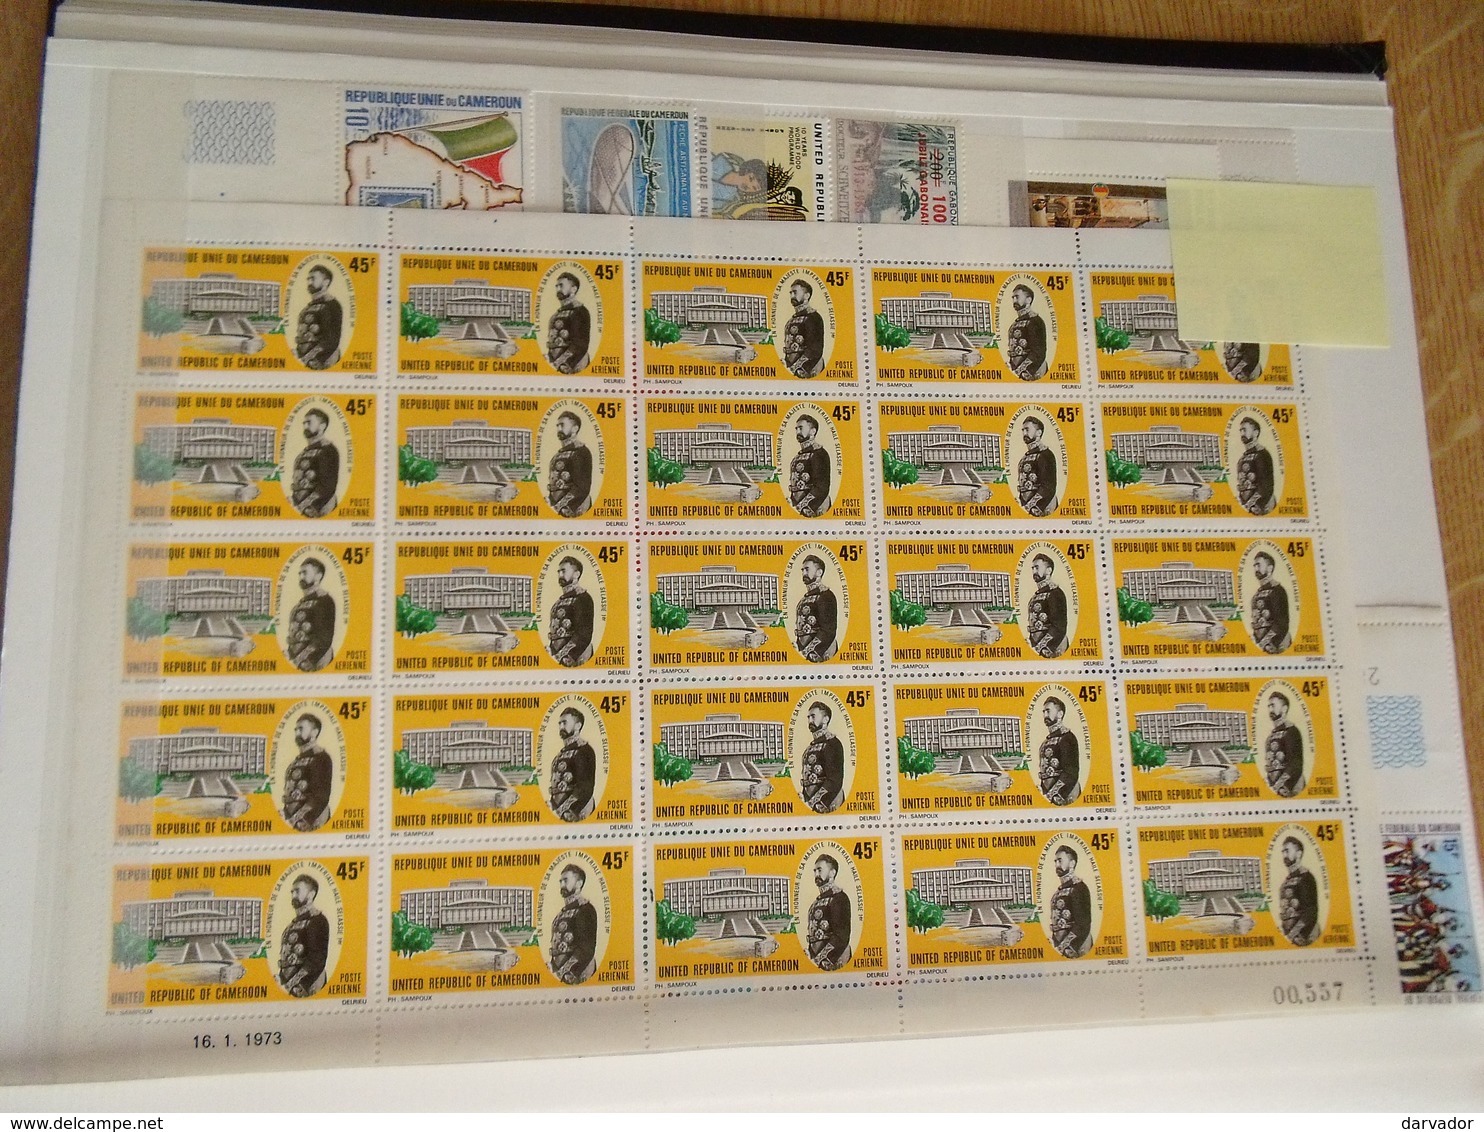 album J / Collection de timbres du CAMEROUN tous neuf ** sans charnière MNH  superbe